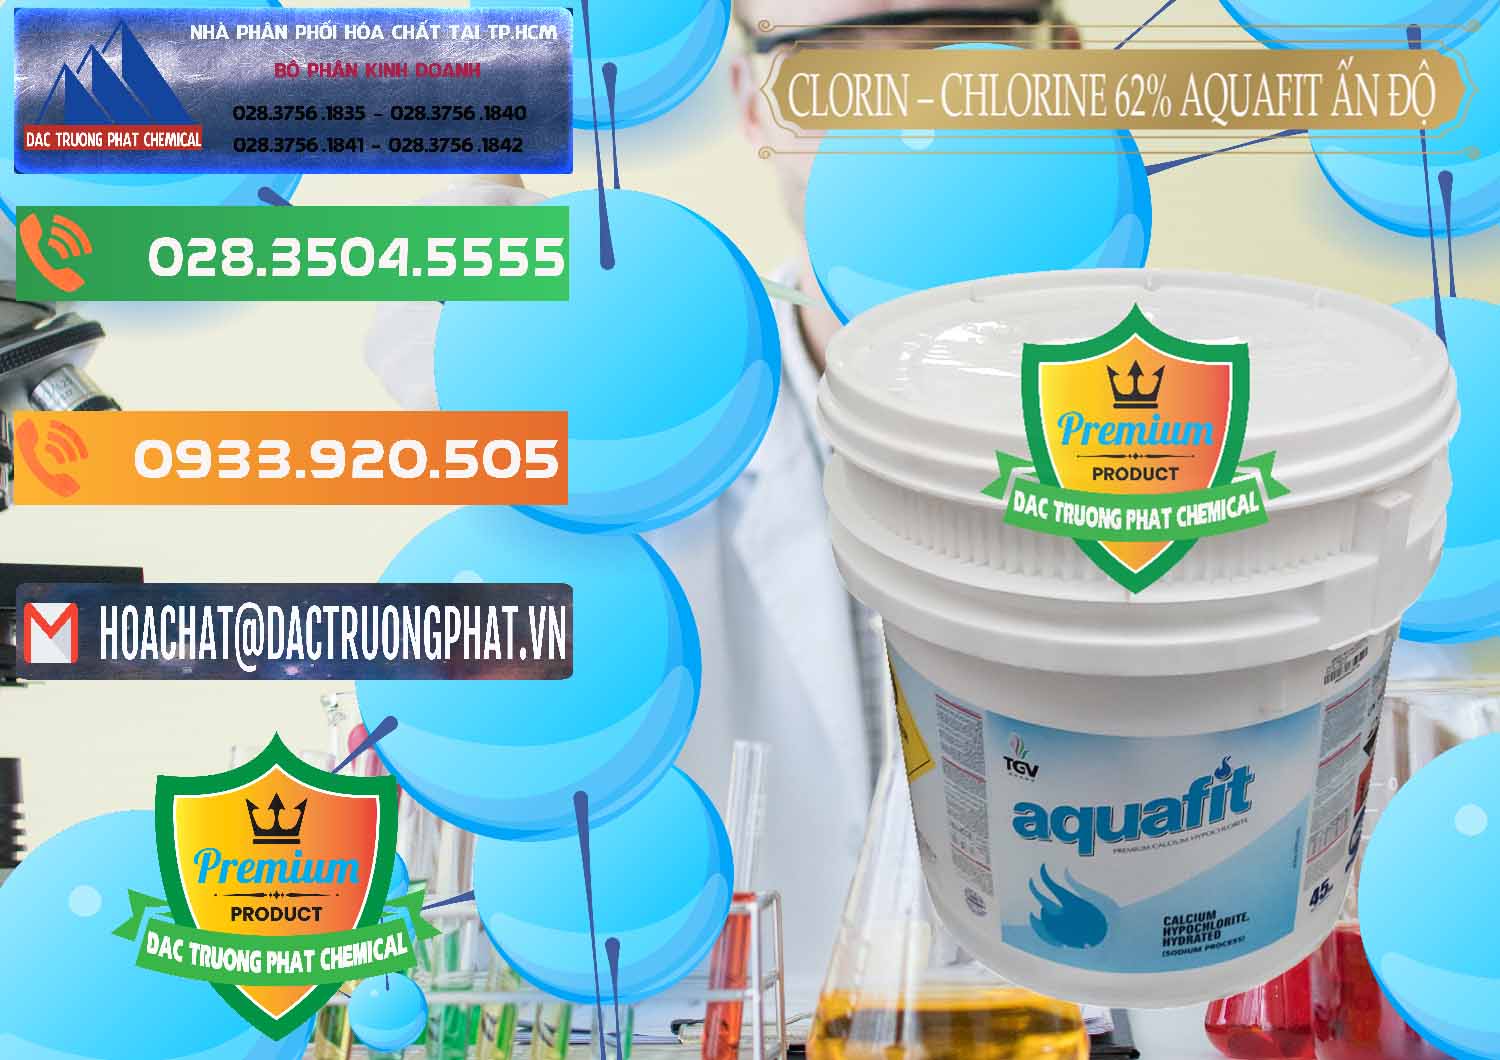 Nơi chuyên phân phối và bán Clorin - Chlorine 62% Aquafit Thùng Lùn Ấn Độ India - 0057 - Nơi chuyên cung cấp và bán hóa chất tại TP.HCM - hoachatxulynuoc.com.vn